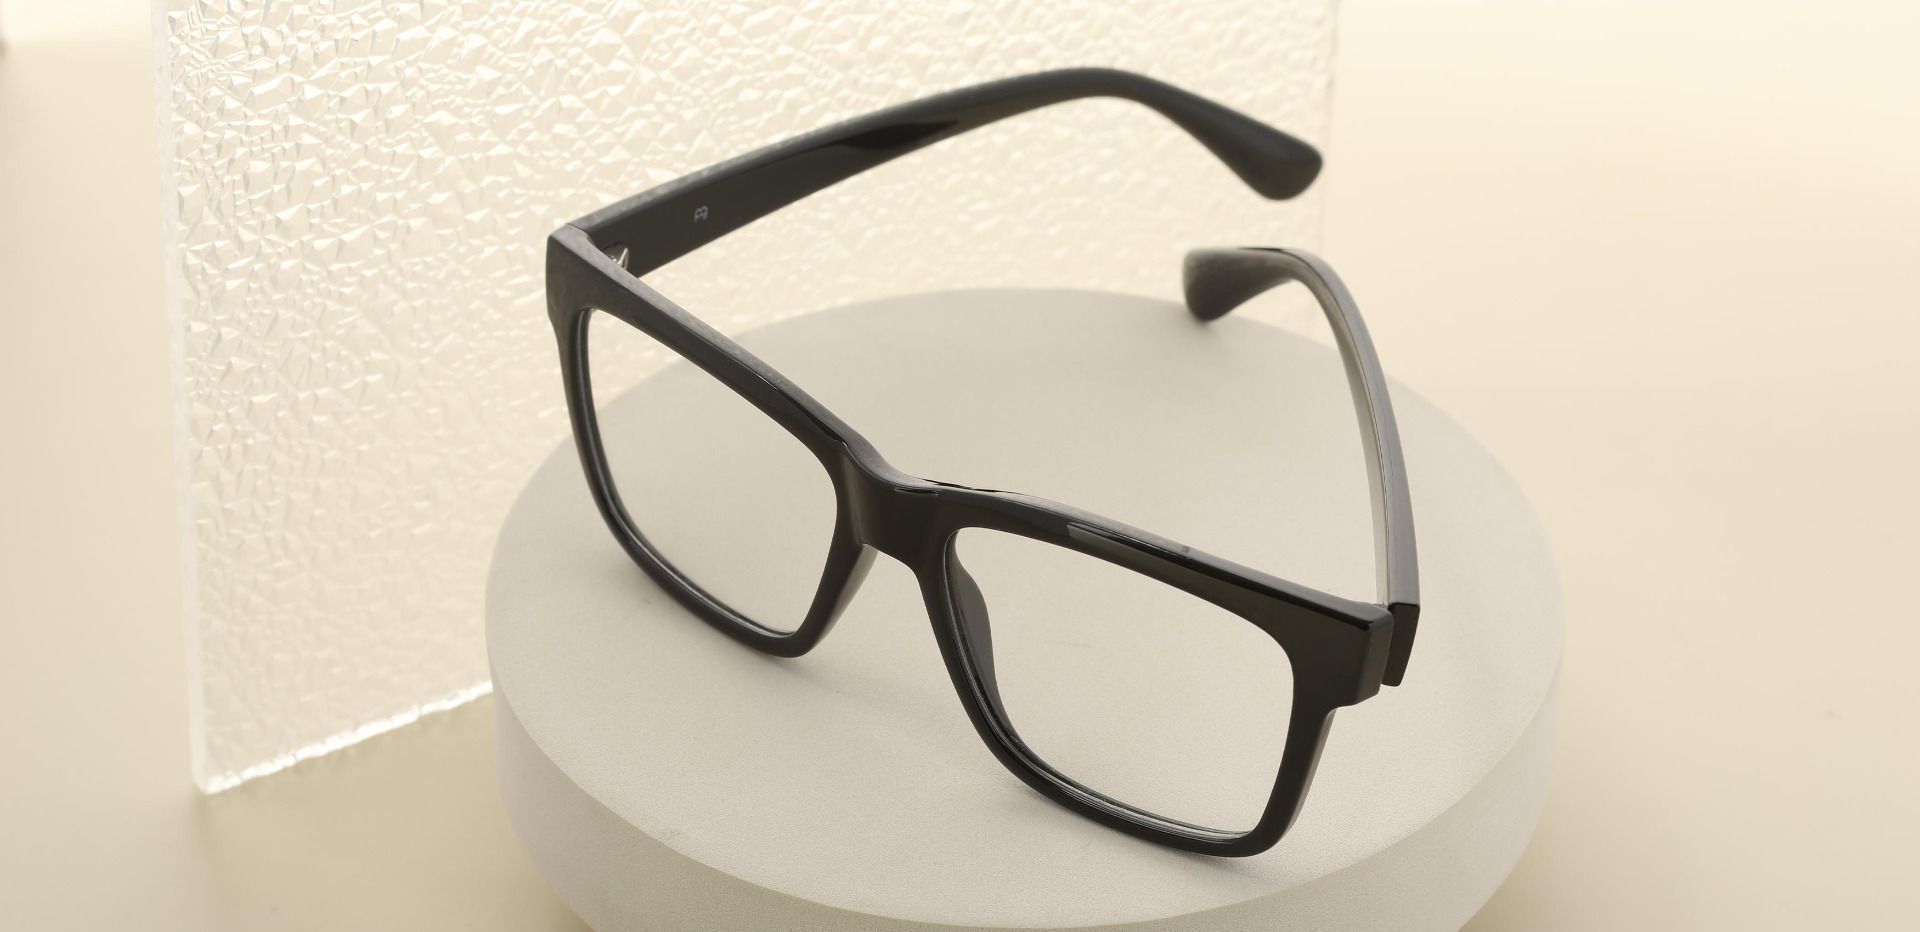 Brinley Square Prescription Glasses - Black